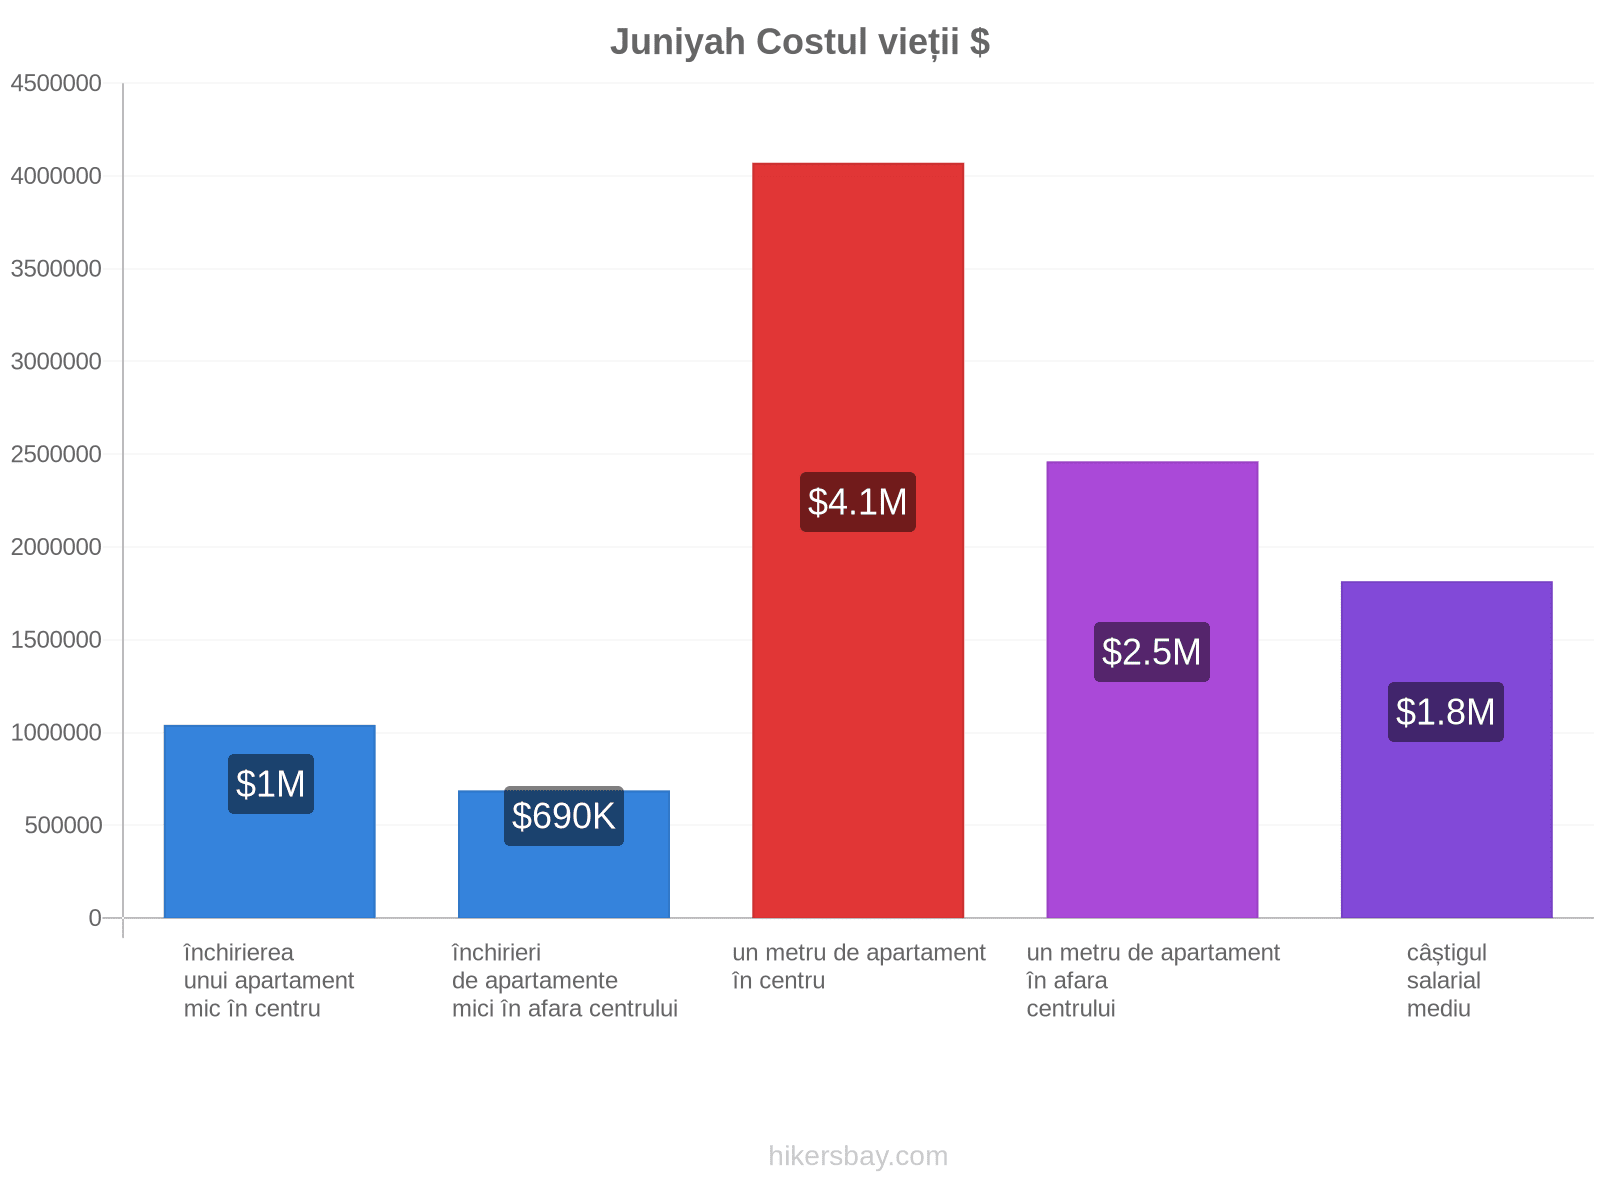 Juniyah costul vieții hikersbay.com